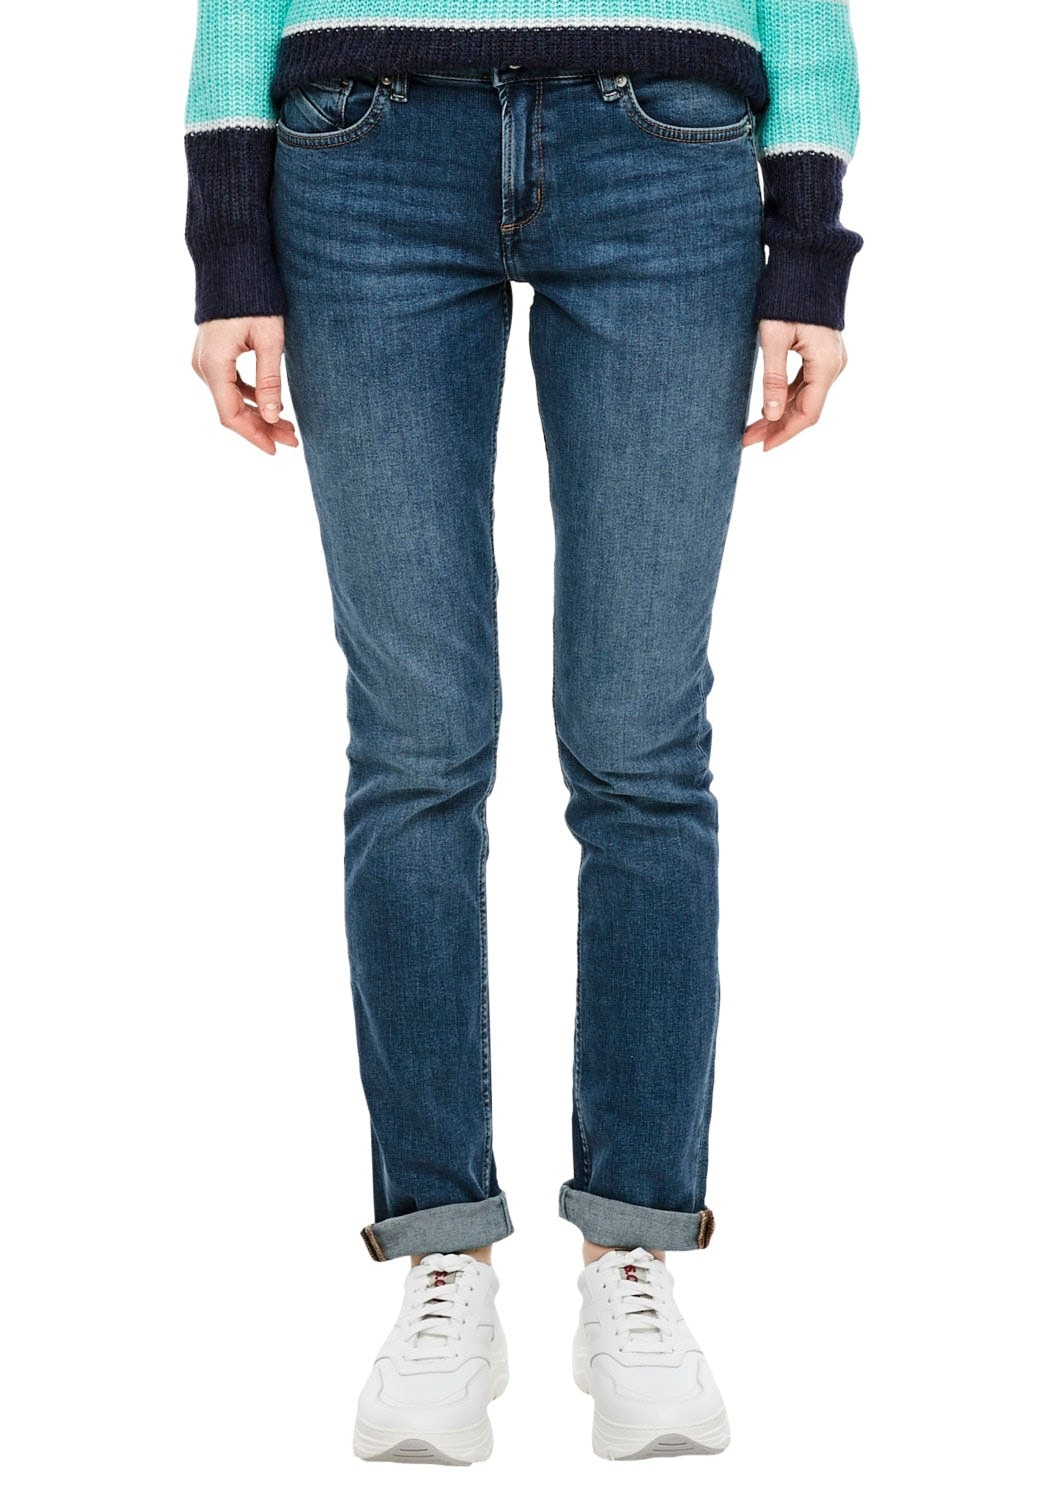 »Catie Slim«, jetzt Form by Slim-fit-Jeans bestellen Q/S 5-Pocket in typischer s.Oliver